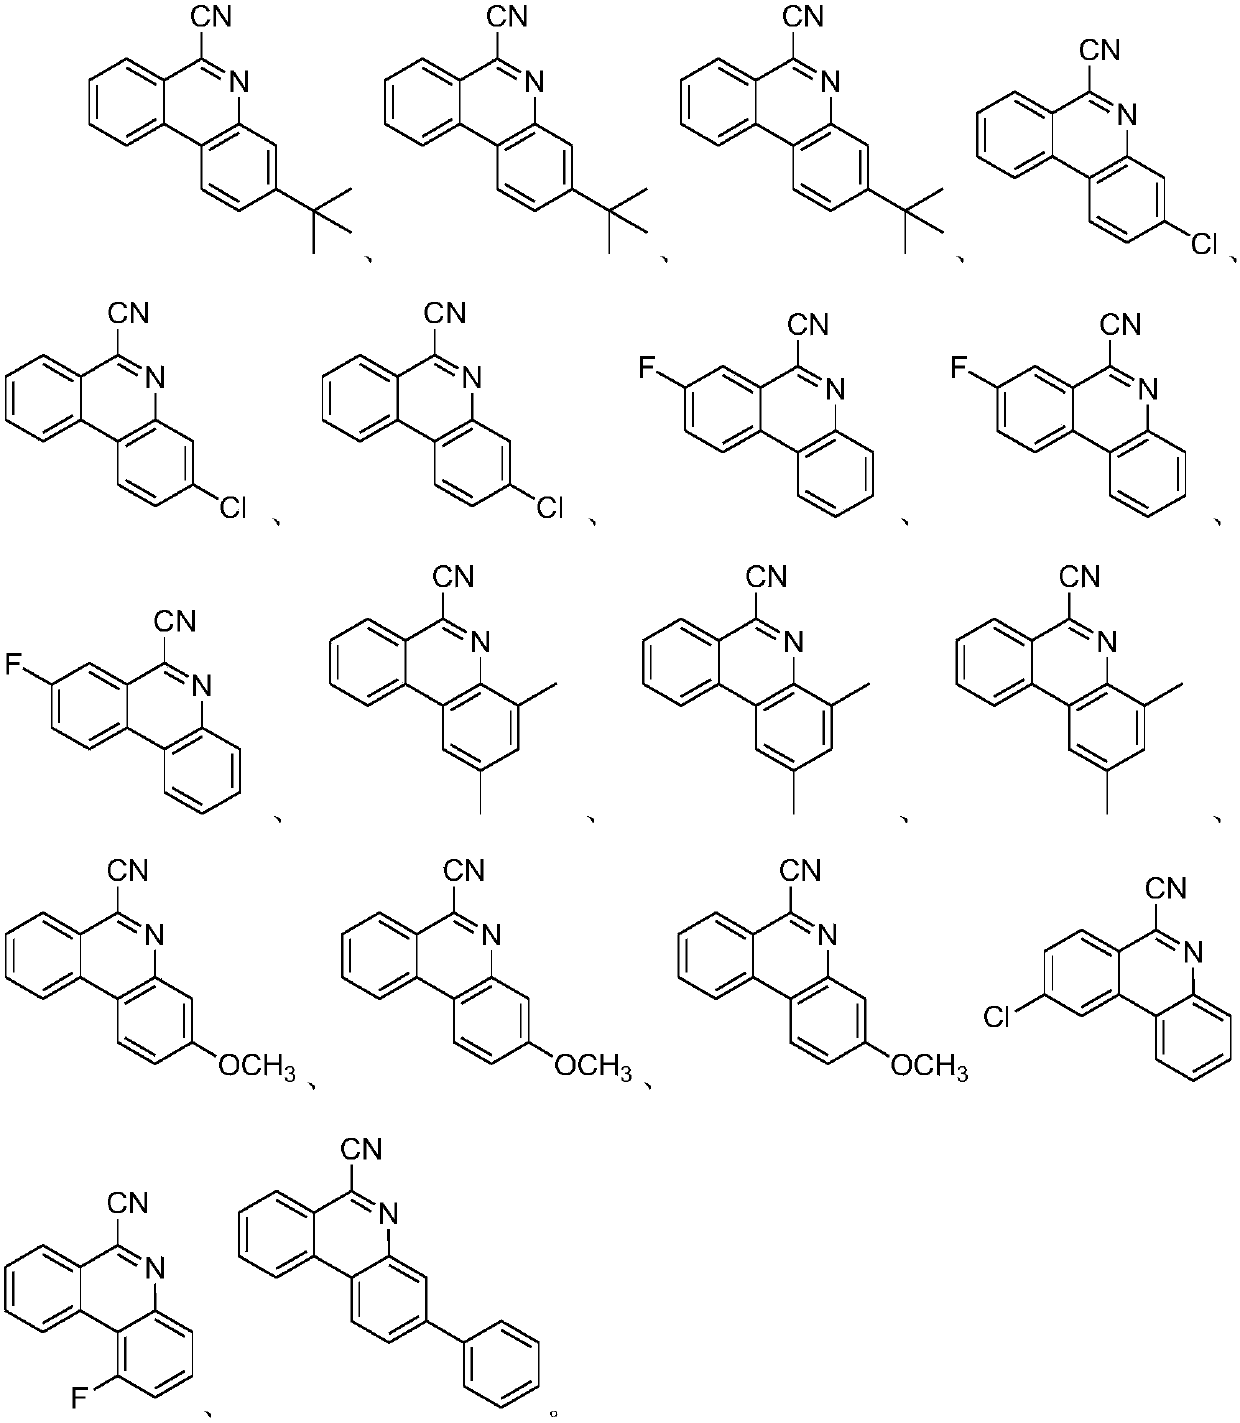 Method for synthesizing 6-cyano phenanthridine compound